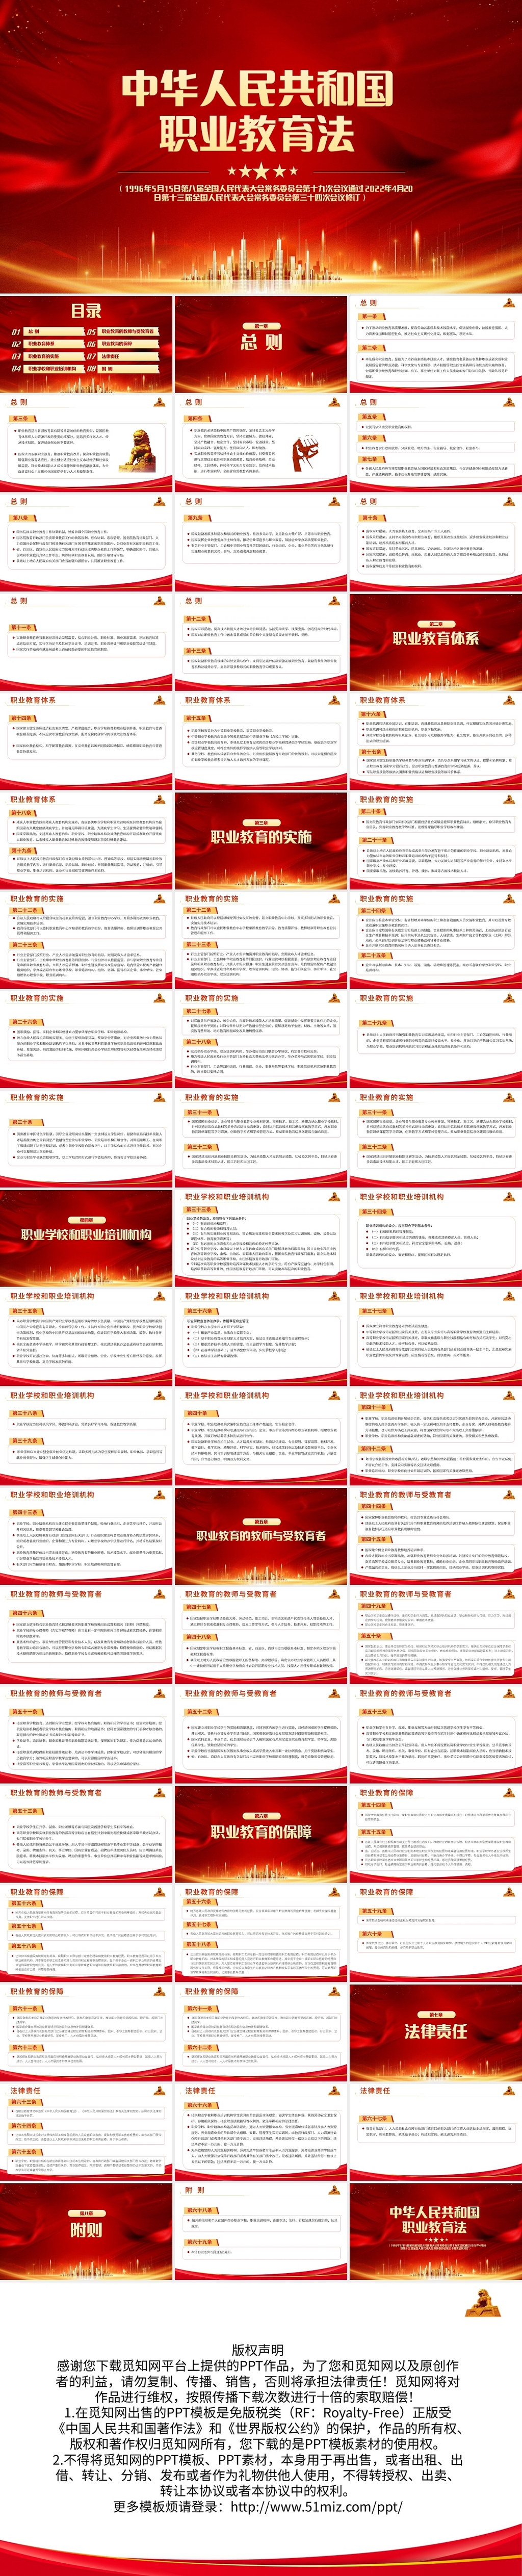 红色简约中华人民共和国职业教育法PPT模板宣传PPT动态PP